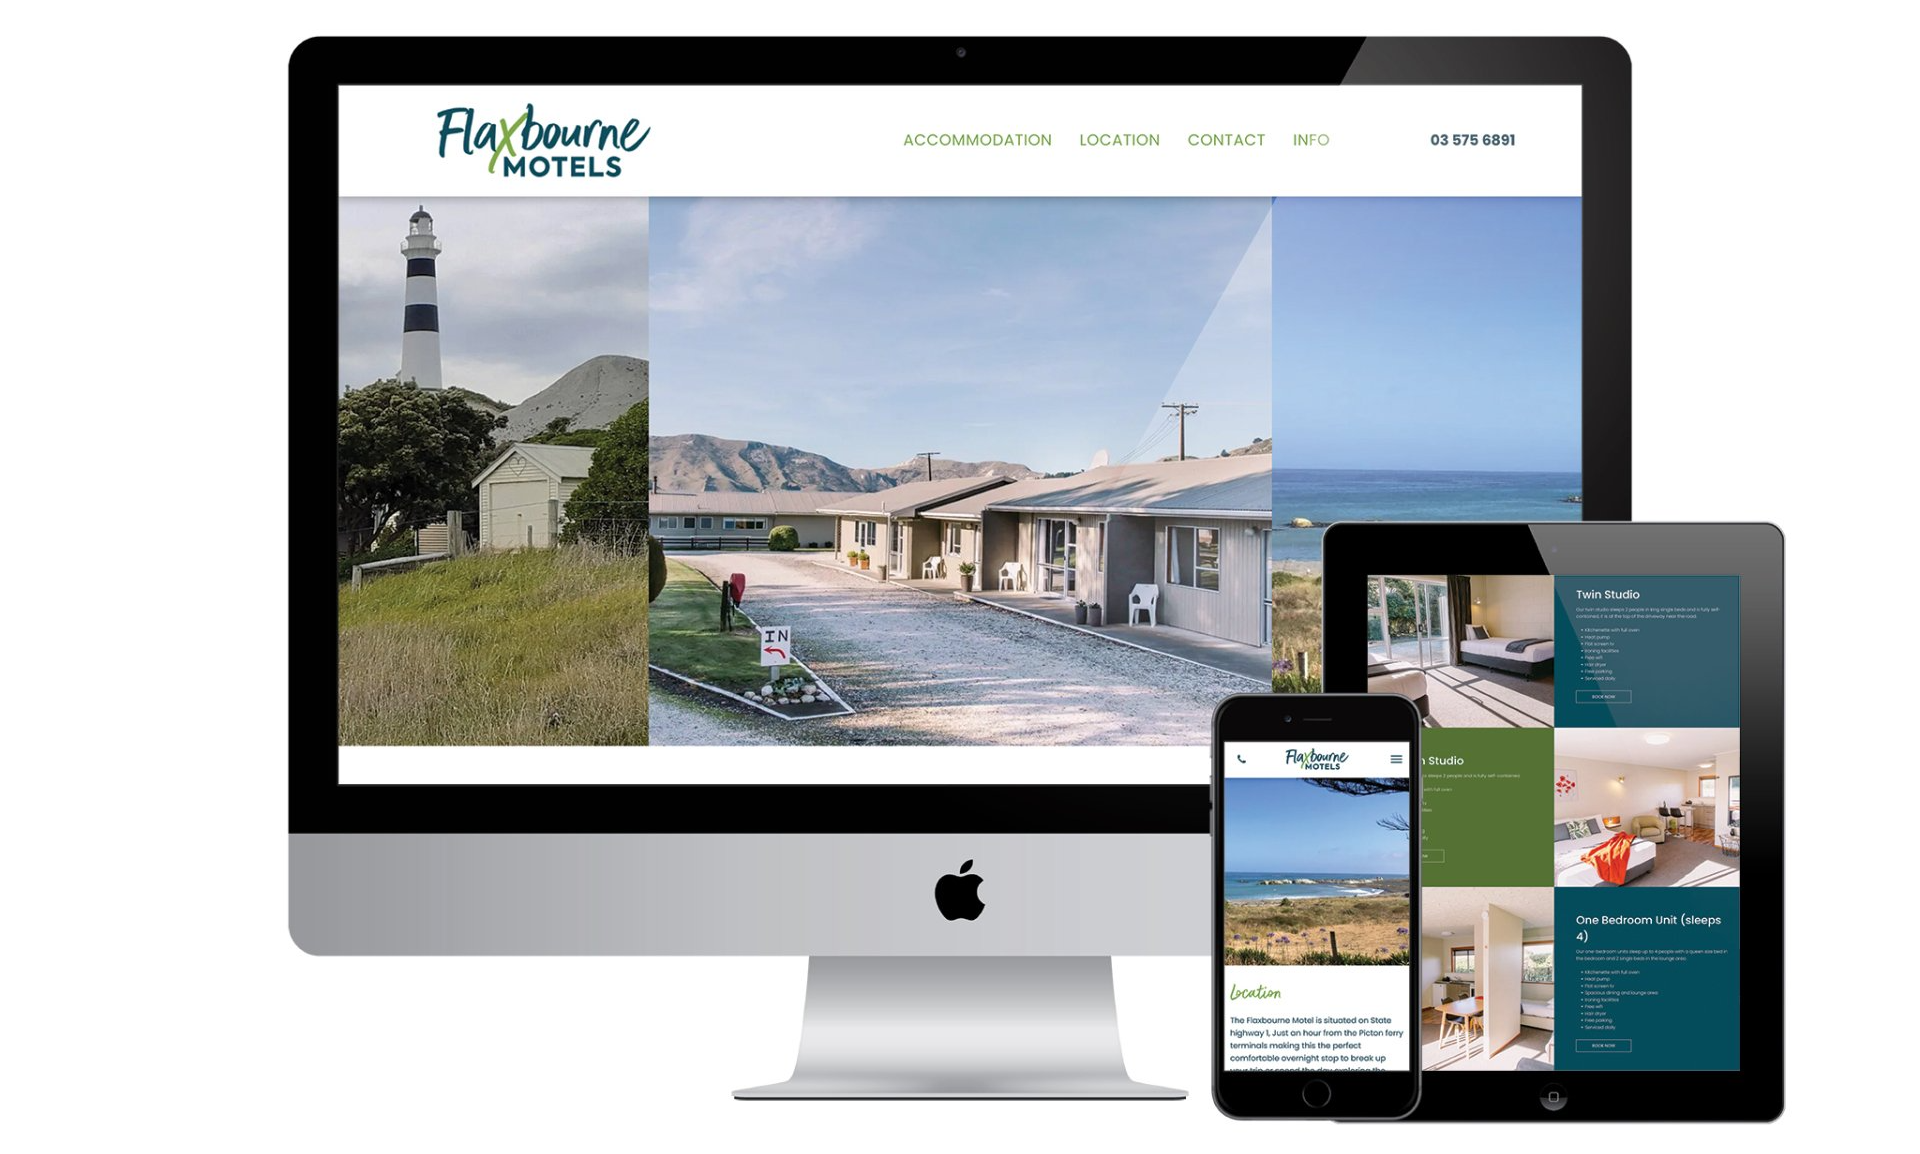 Flaxbourne Motels website designed by Vanilla Hayes creative graphic design  studio in Blenheim, Marlborough, New Zealand